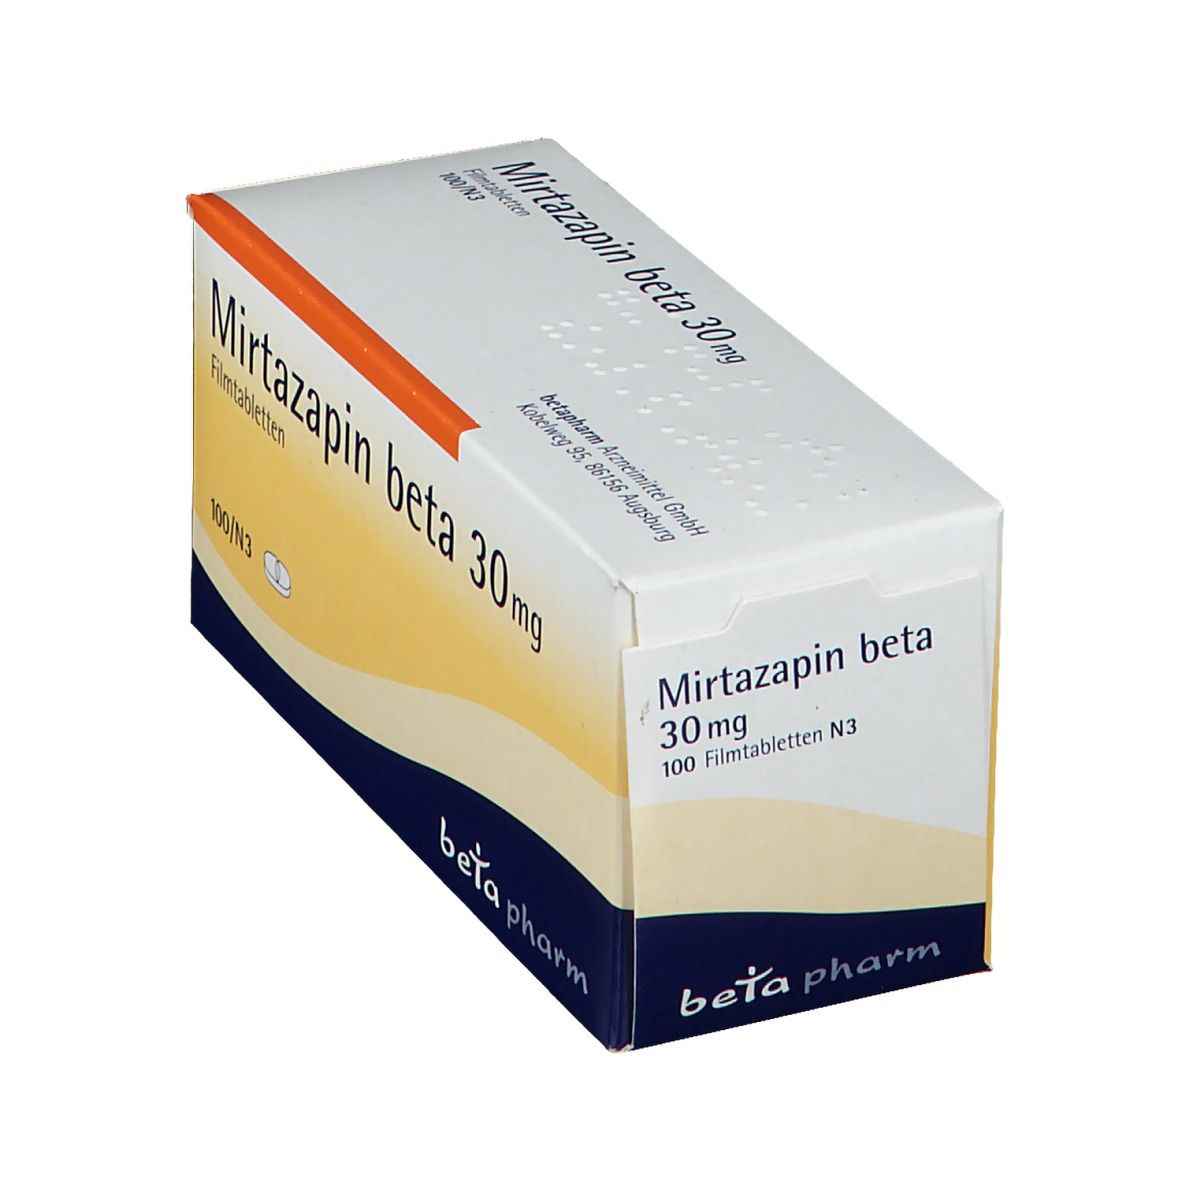 Mirtazapin beta 30 mg